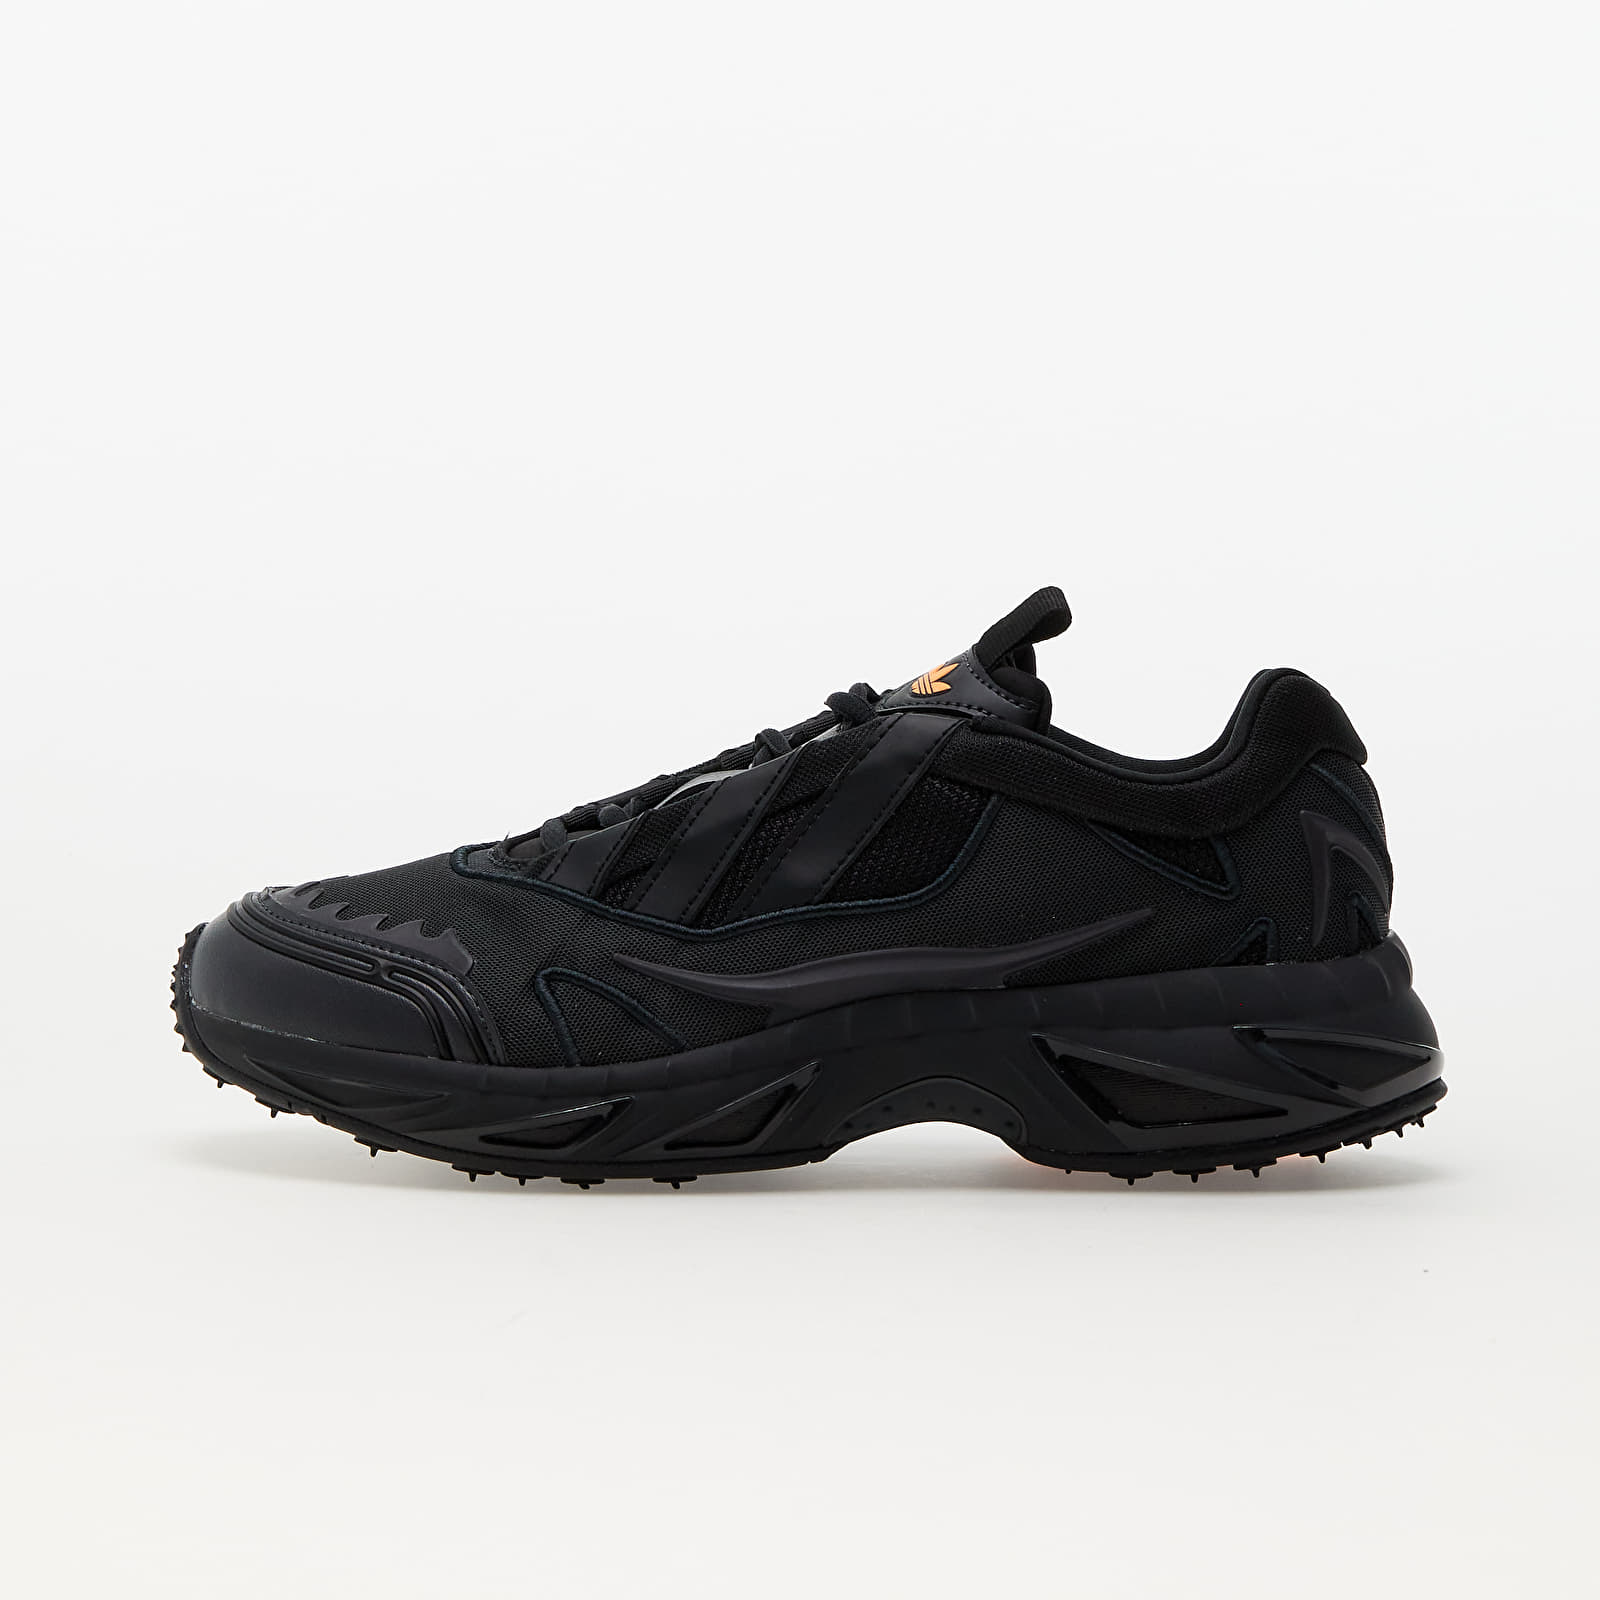 Zapatillas Hombre adidas Xare BOOST Carbon/ Core Black/ Grey Six